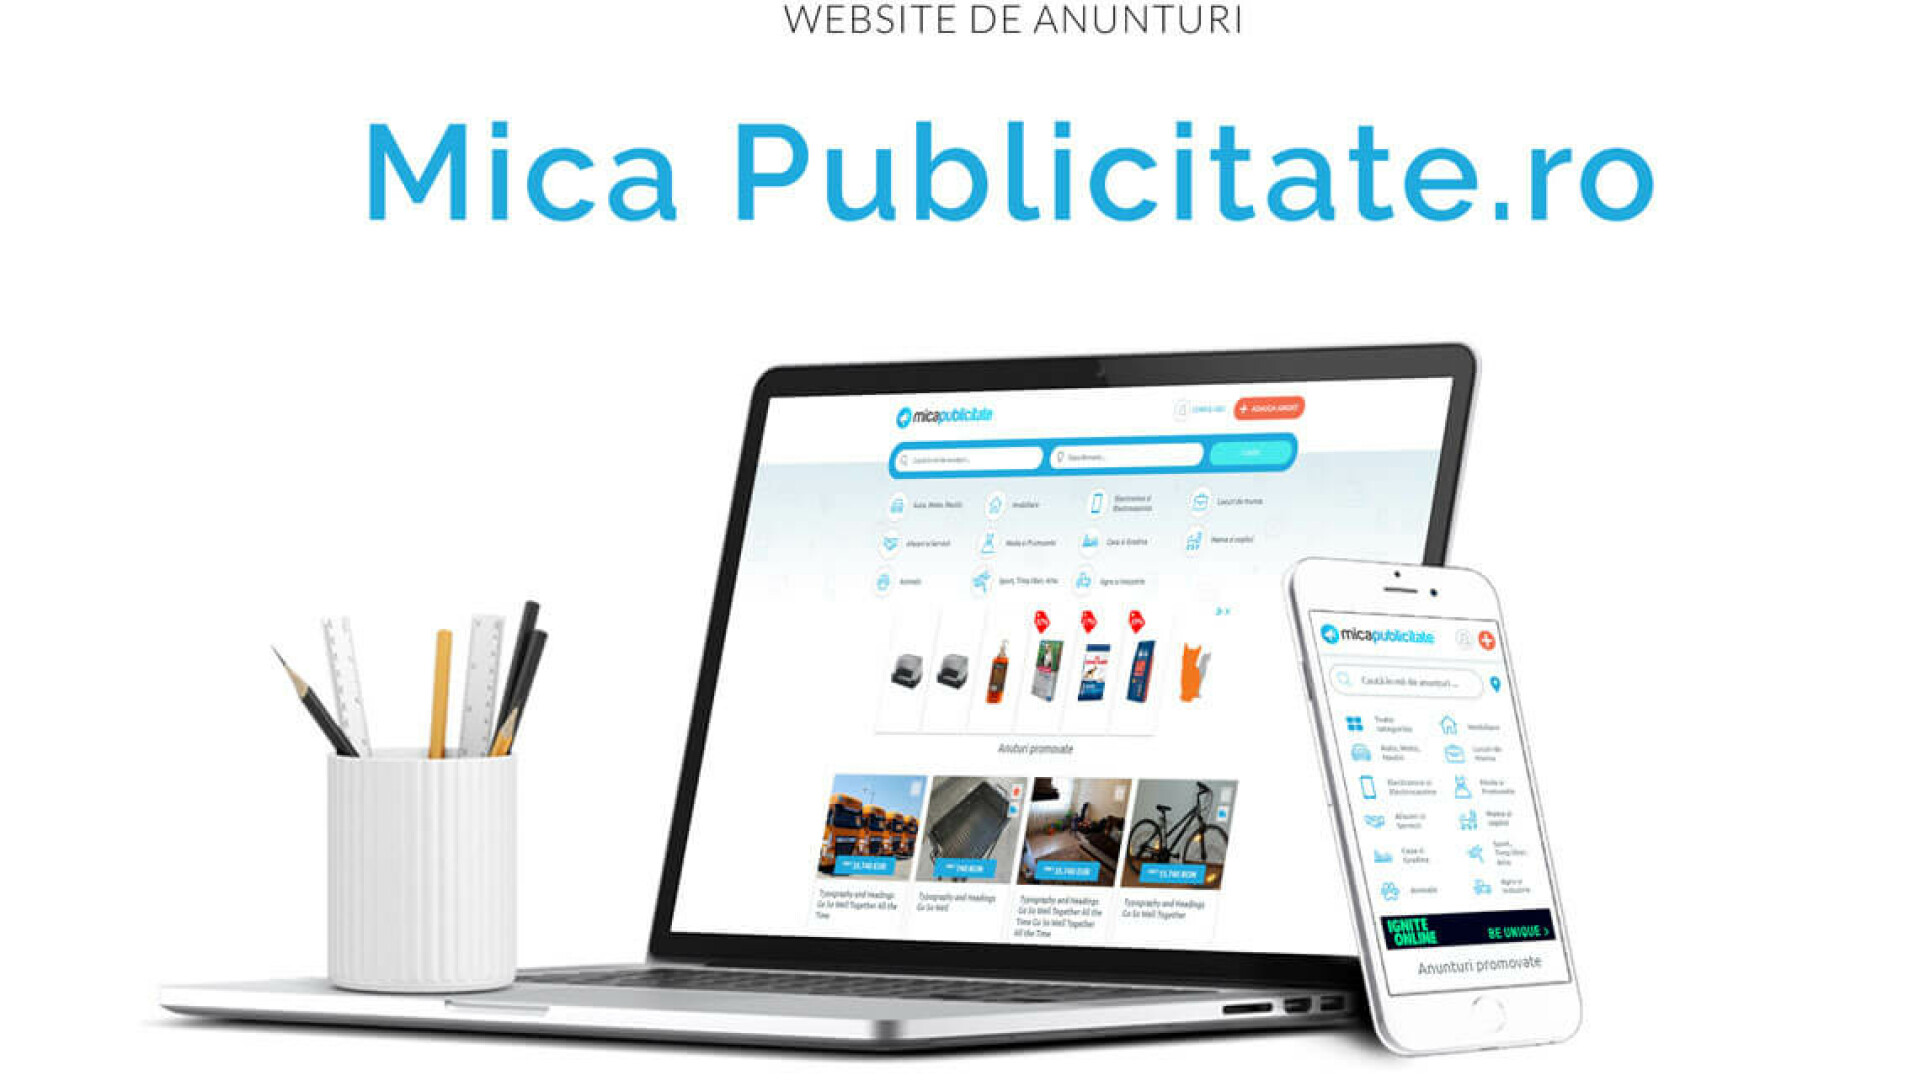 (P) Micapublicitate.ro, cel mai nou site de anunțuri gratuite